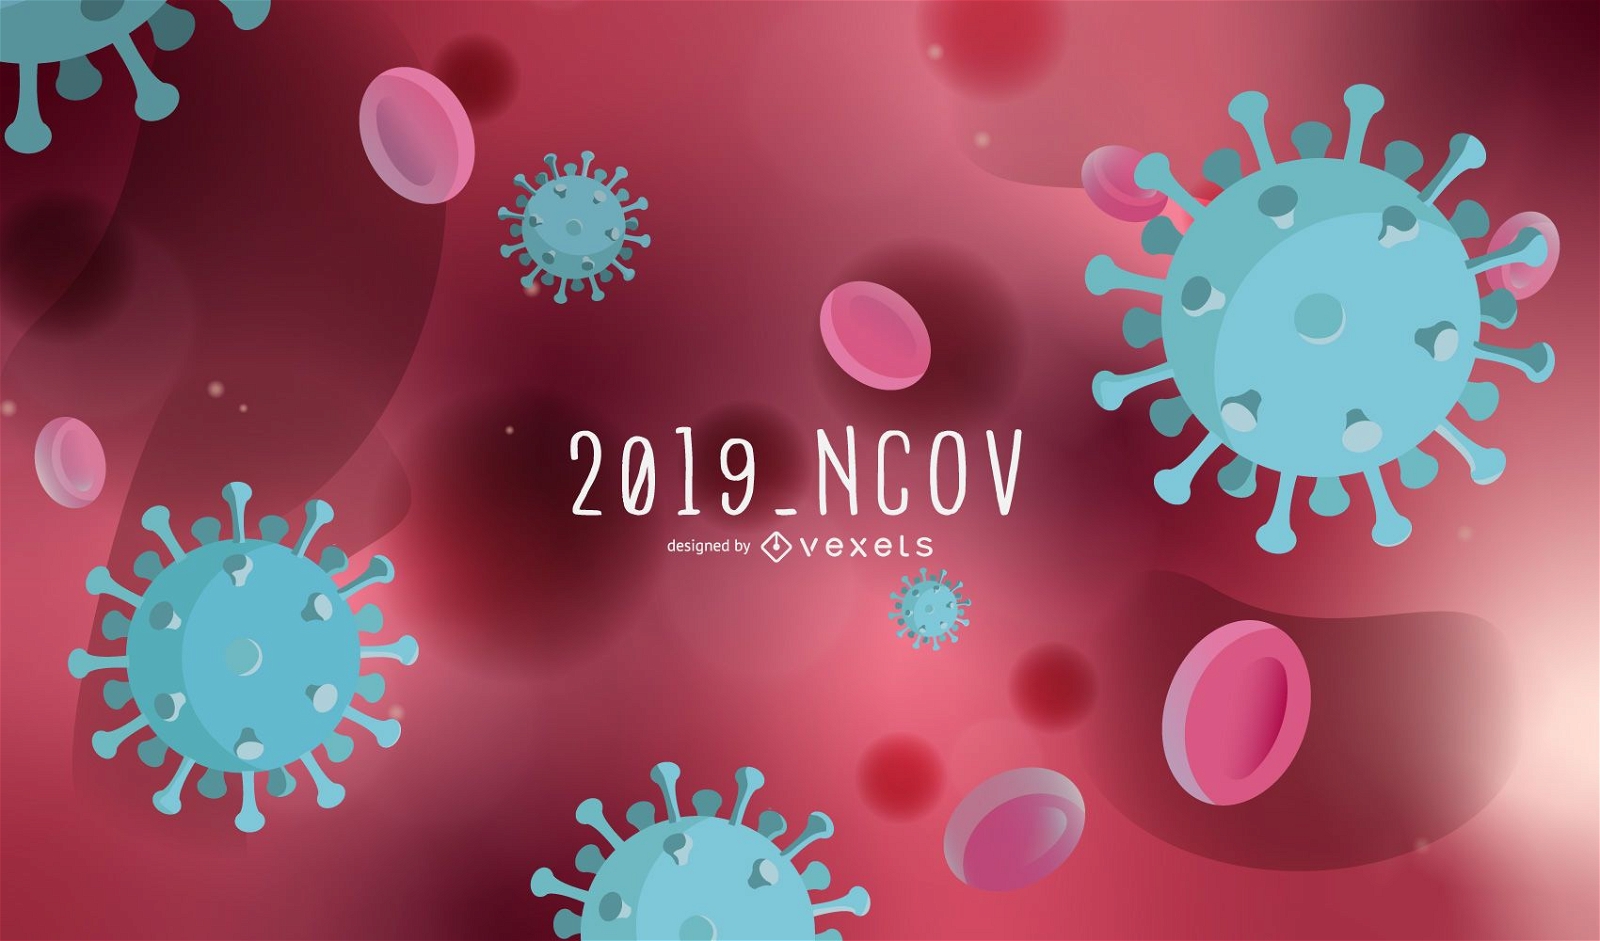 Dise?o de fondo de coronavirus NCOV 2019